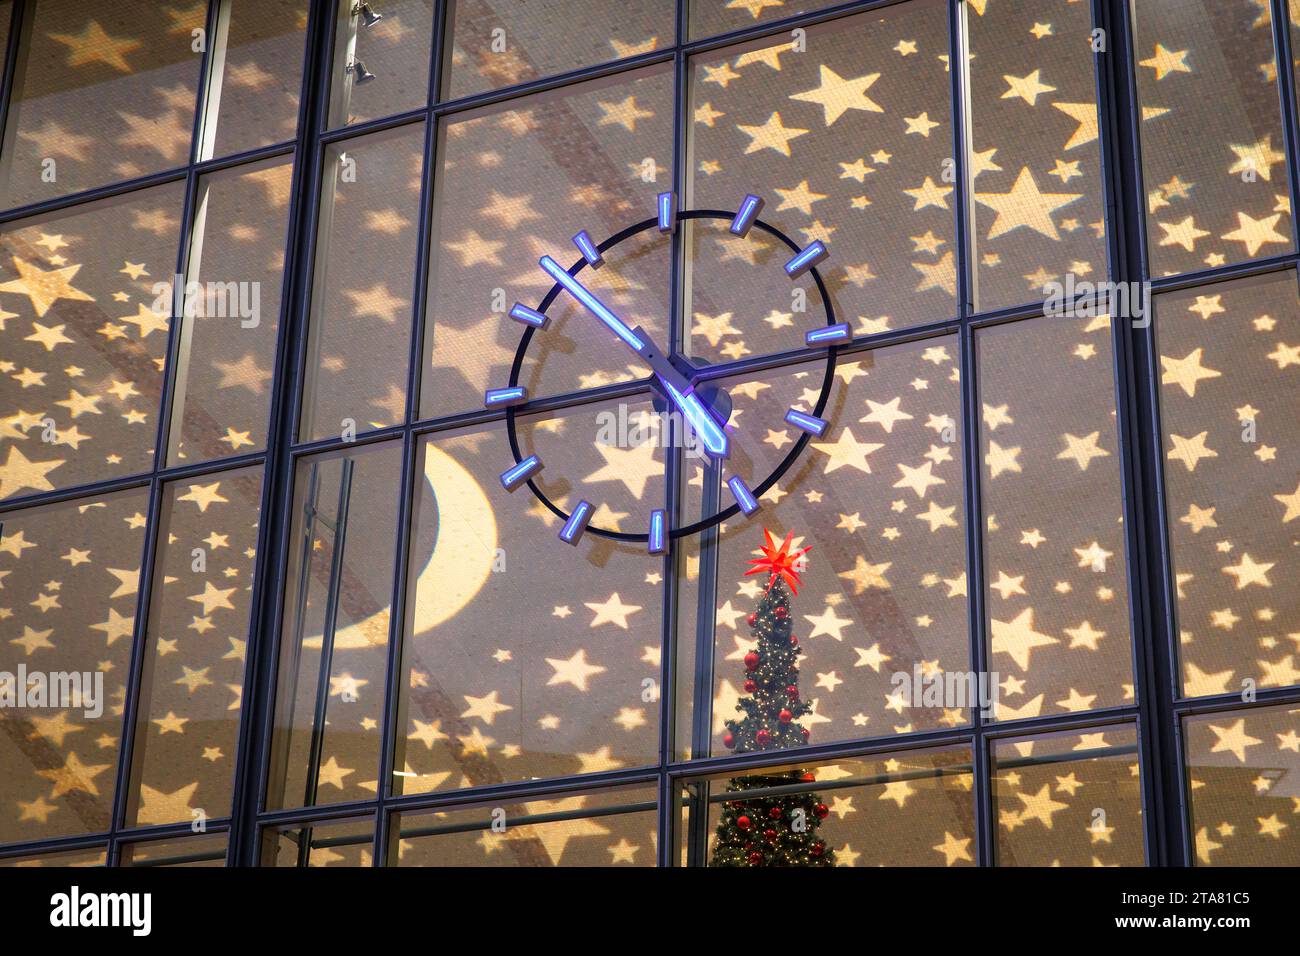 Orologio della stazione centrale durante il periodo natalizio, soffitto illuminato a Natale, Colonia, Germania. Uhr am Hauptbahnhof waehrend der Weihnachtszeit, Foto Stock